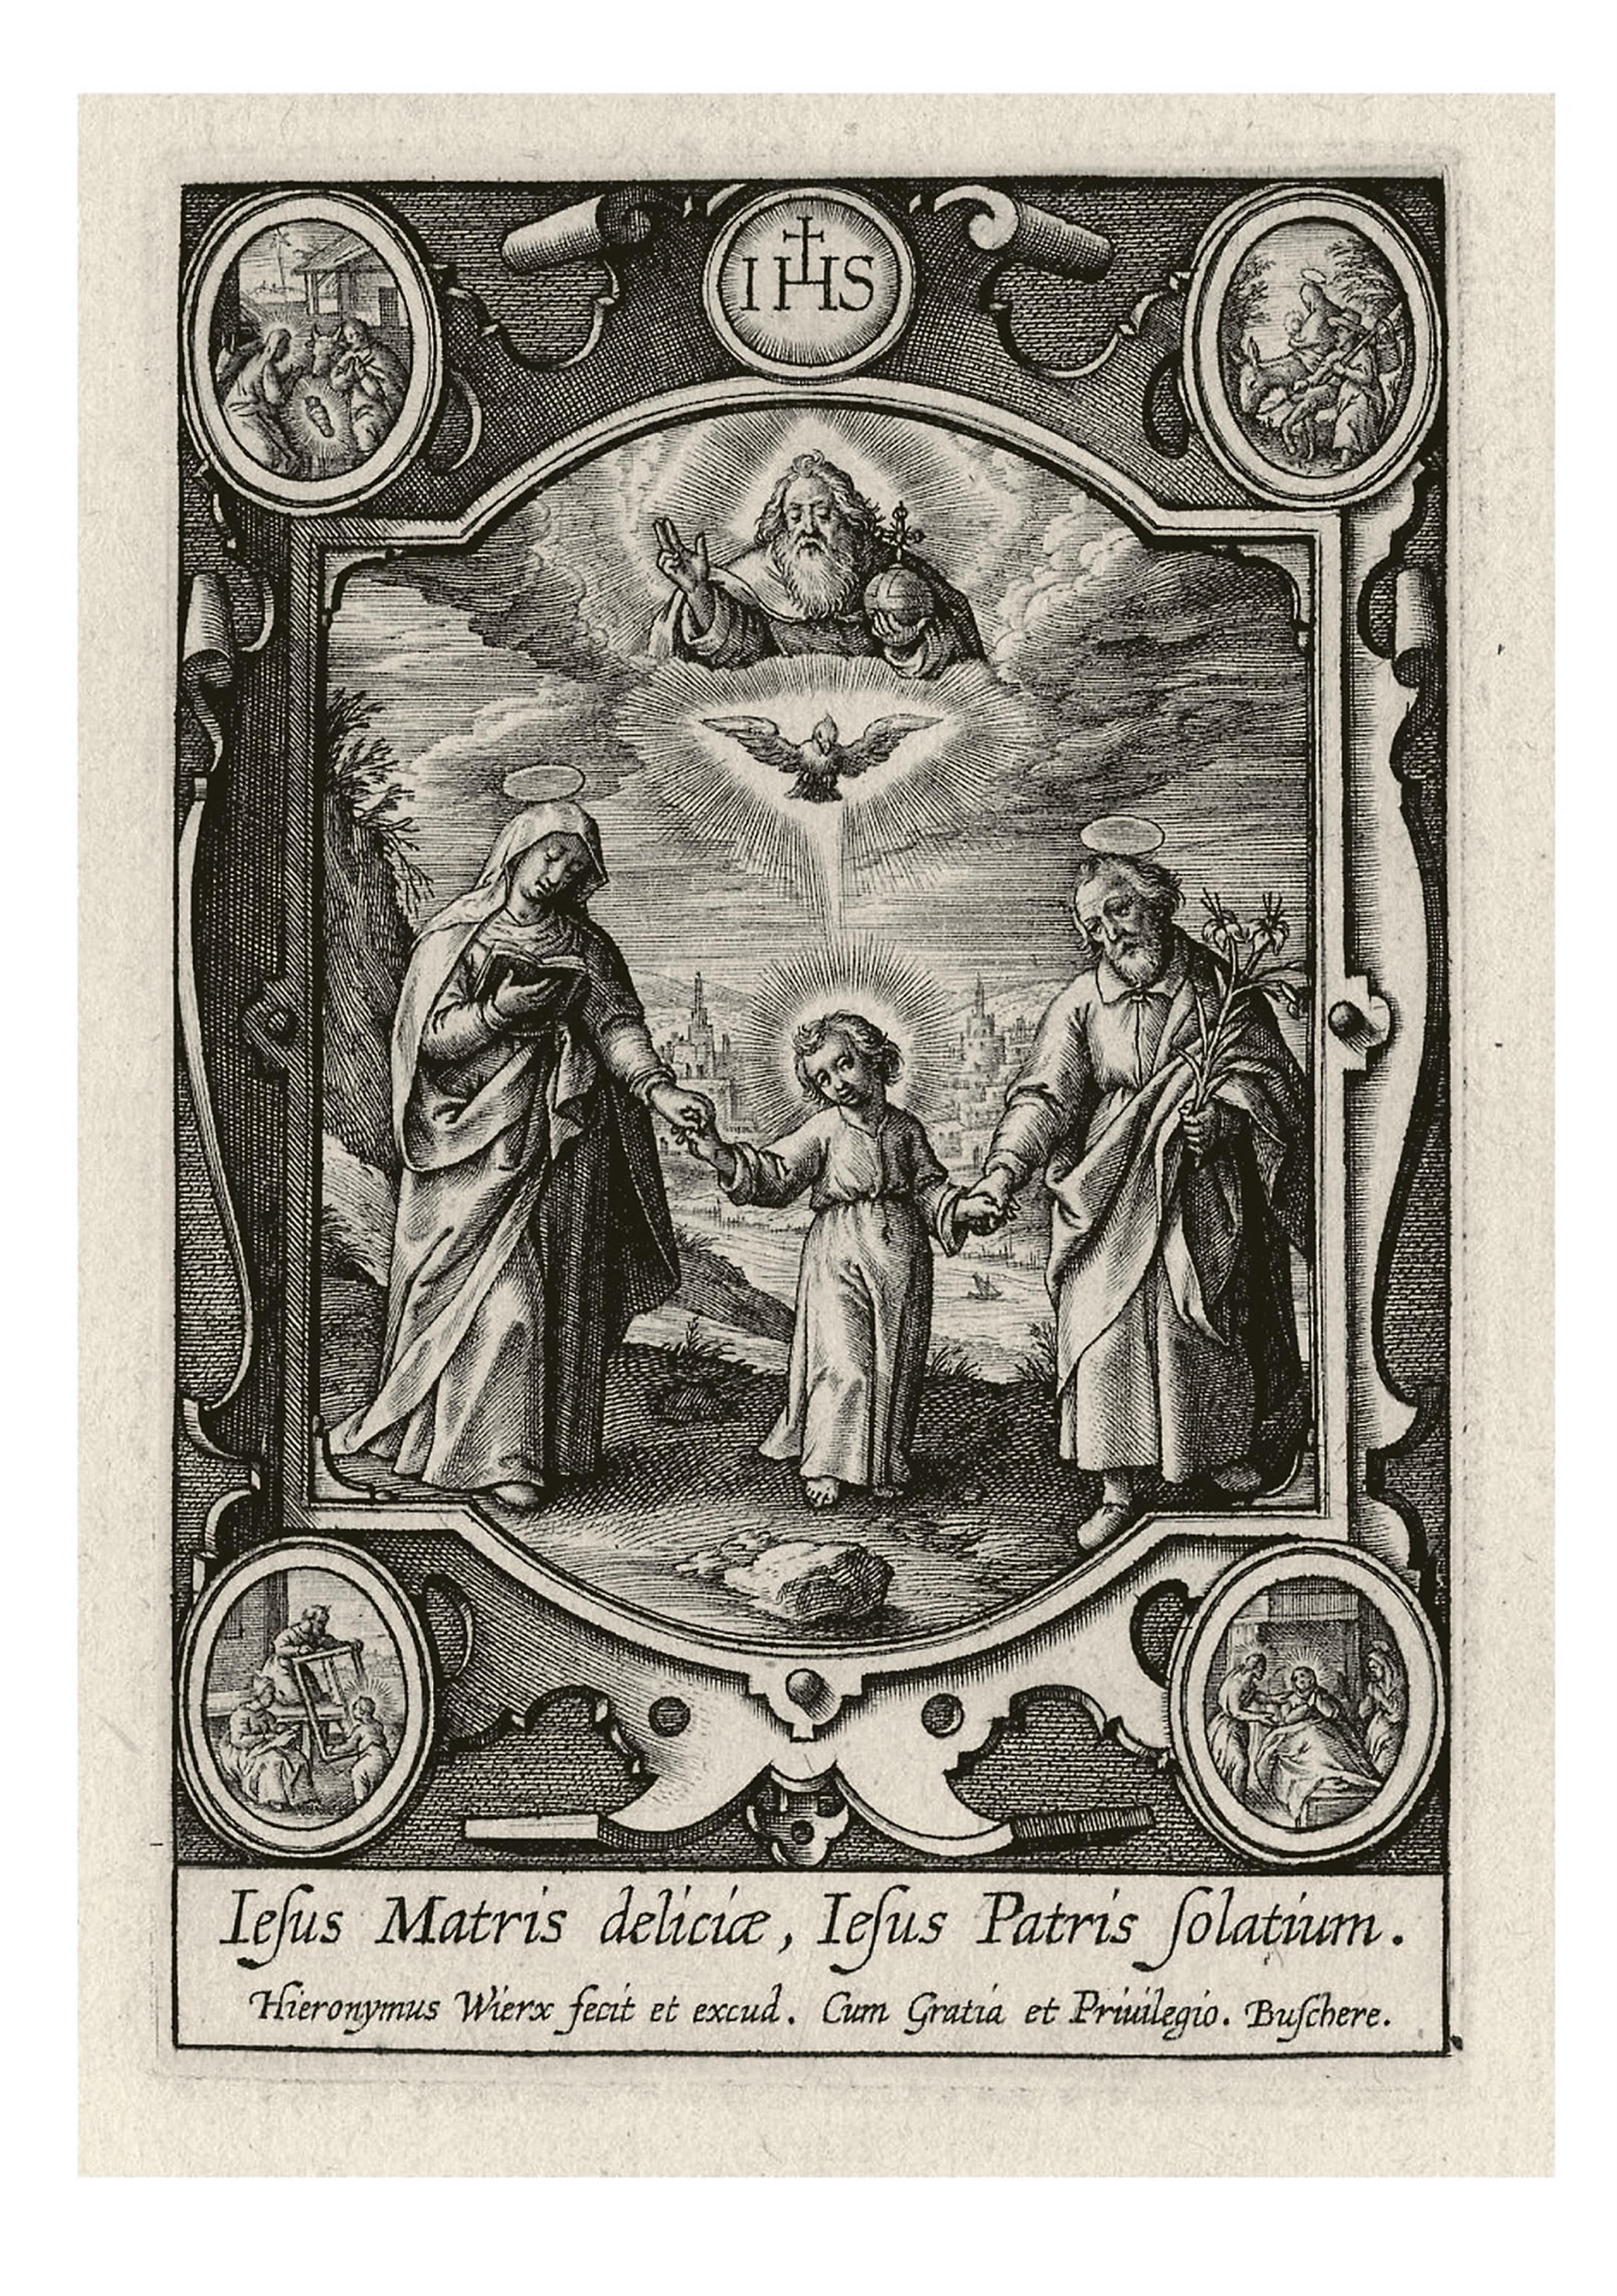 Heiliger Wandel
Malerfamilie Spengler, Konstanz, erste Hälfte 18. Jh. - image-2